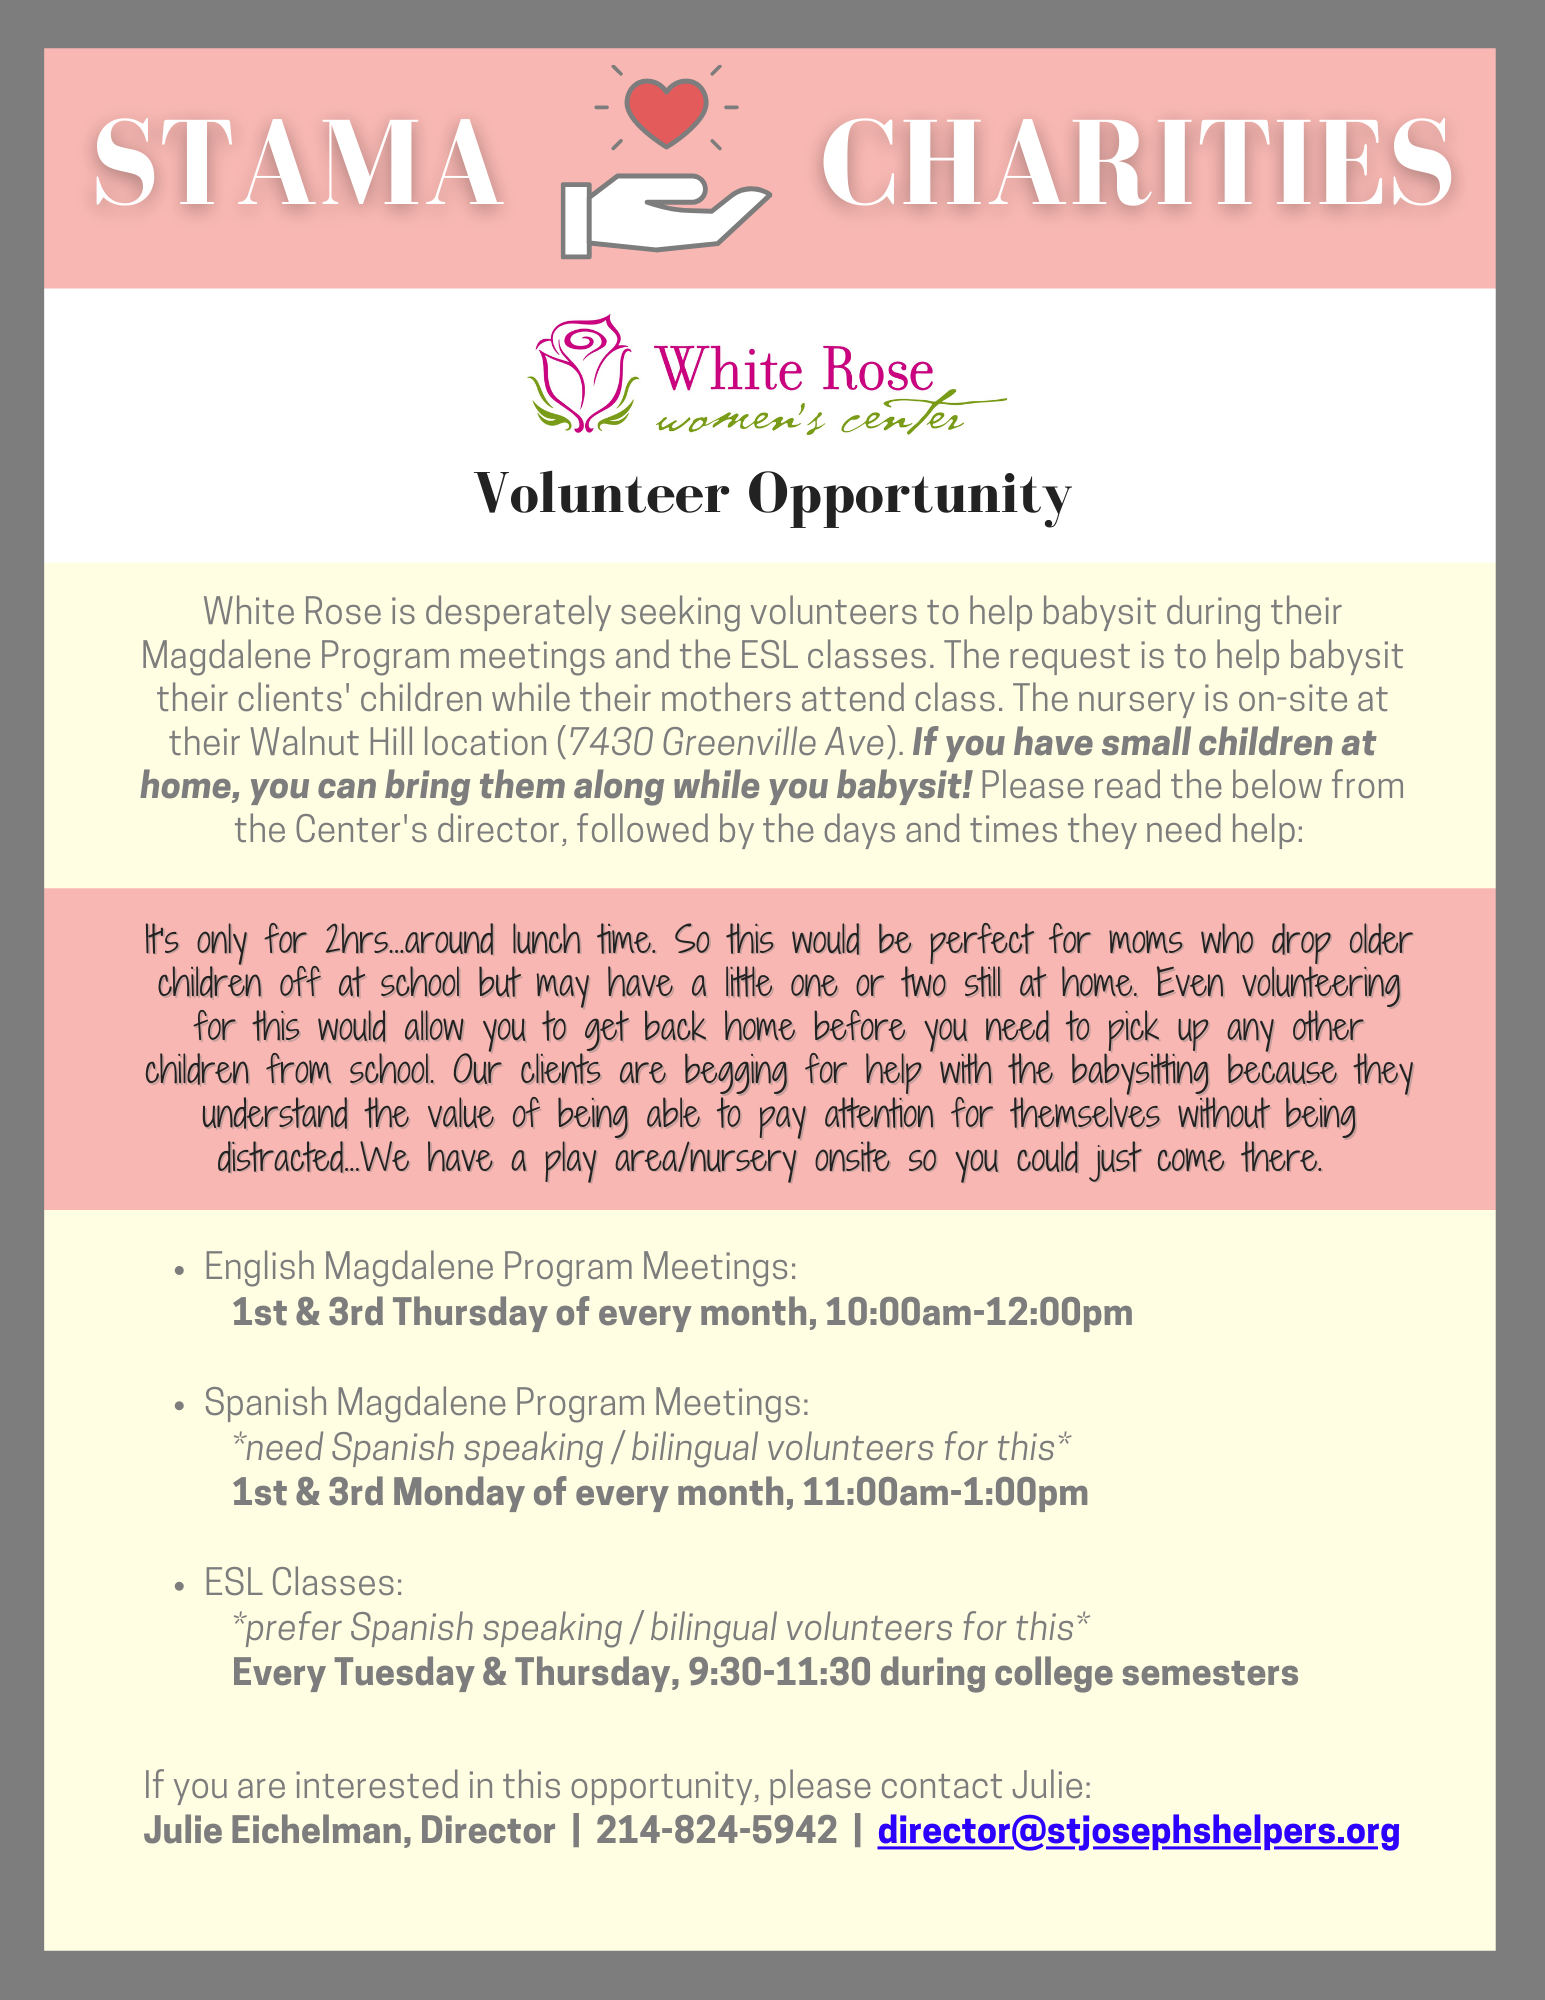 STAMA Charities Volunteer Opportunities Moms Group Dallas